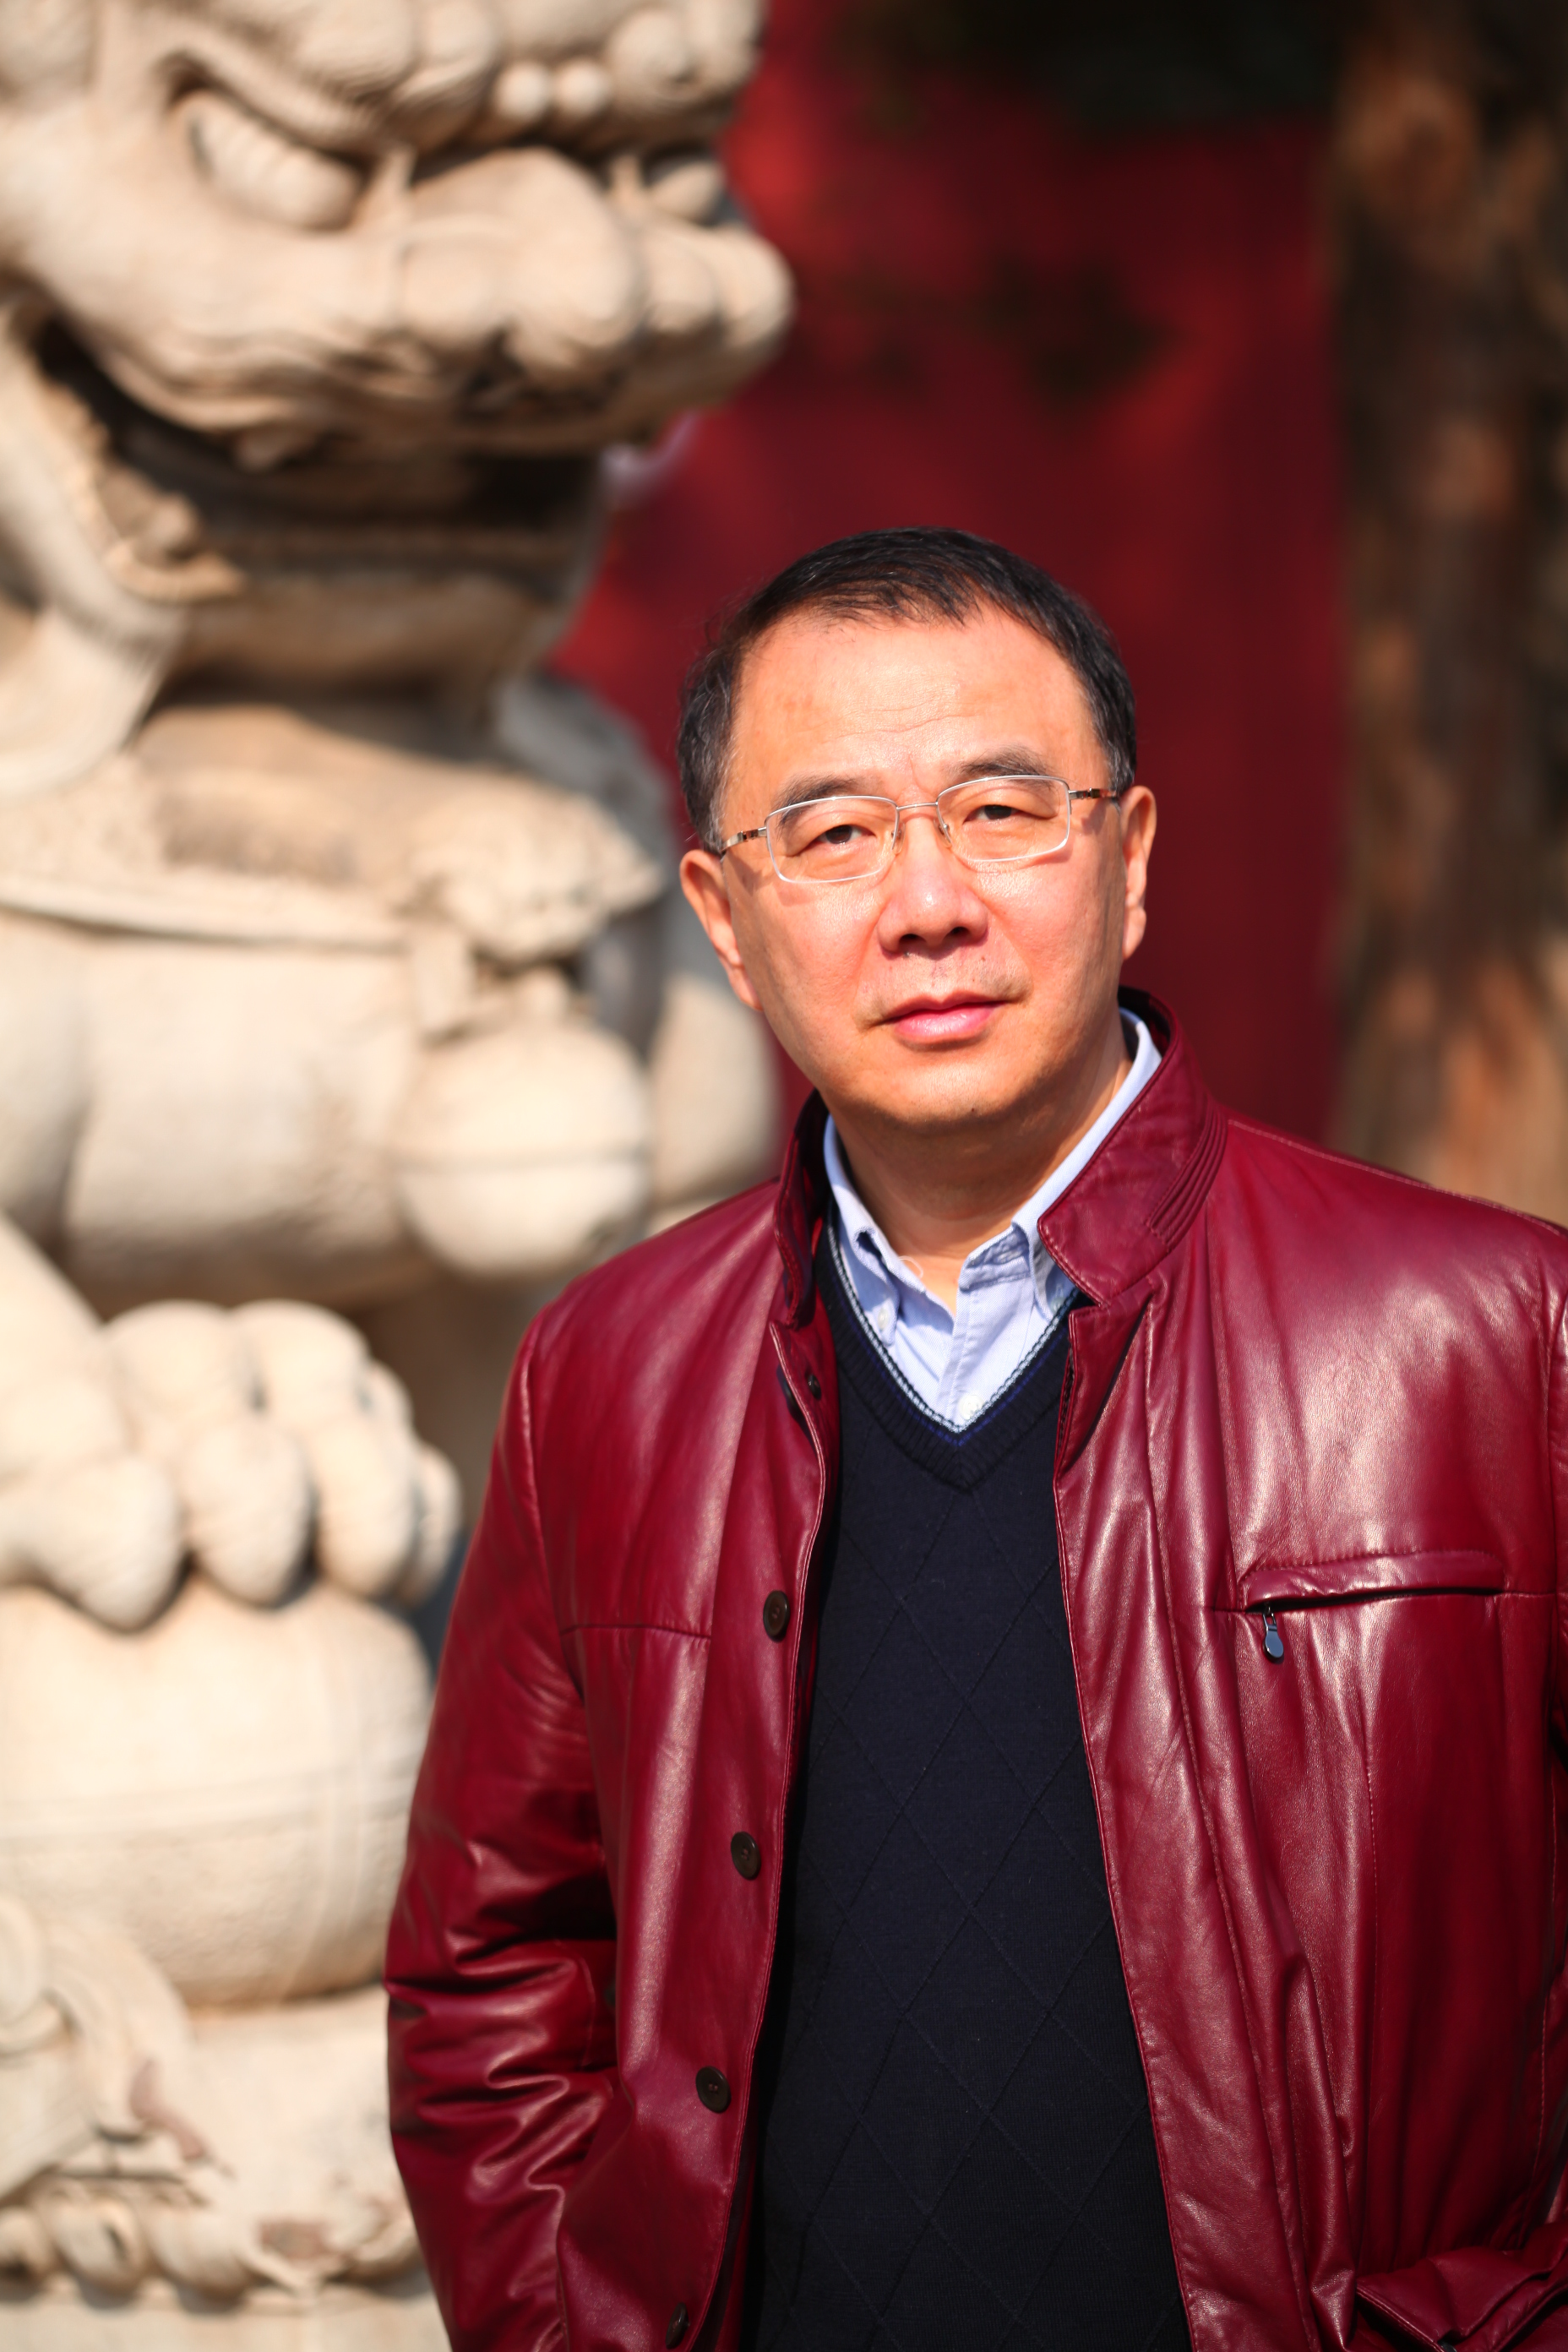 Professor Tang Jianping